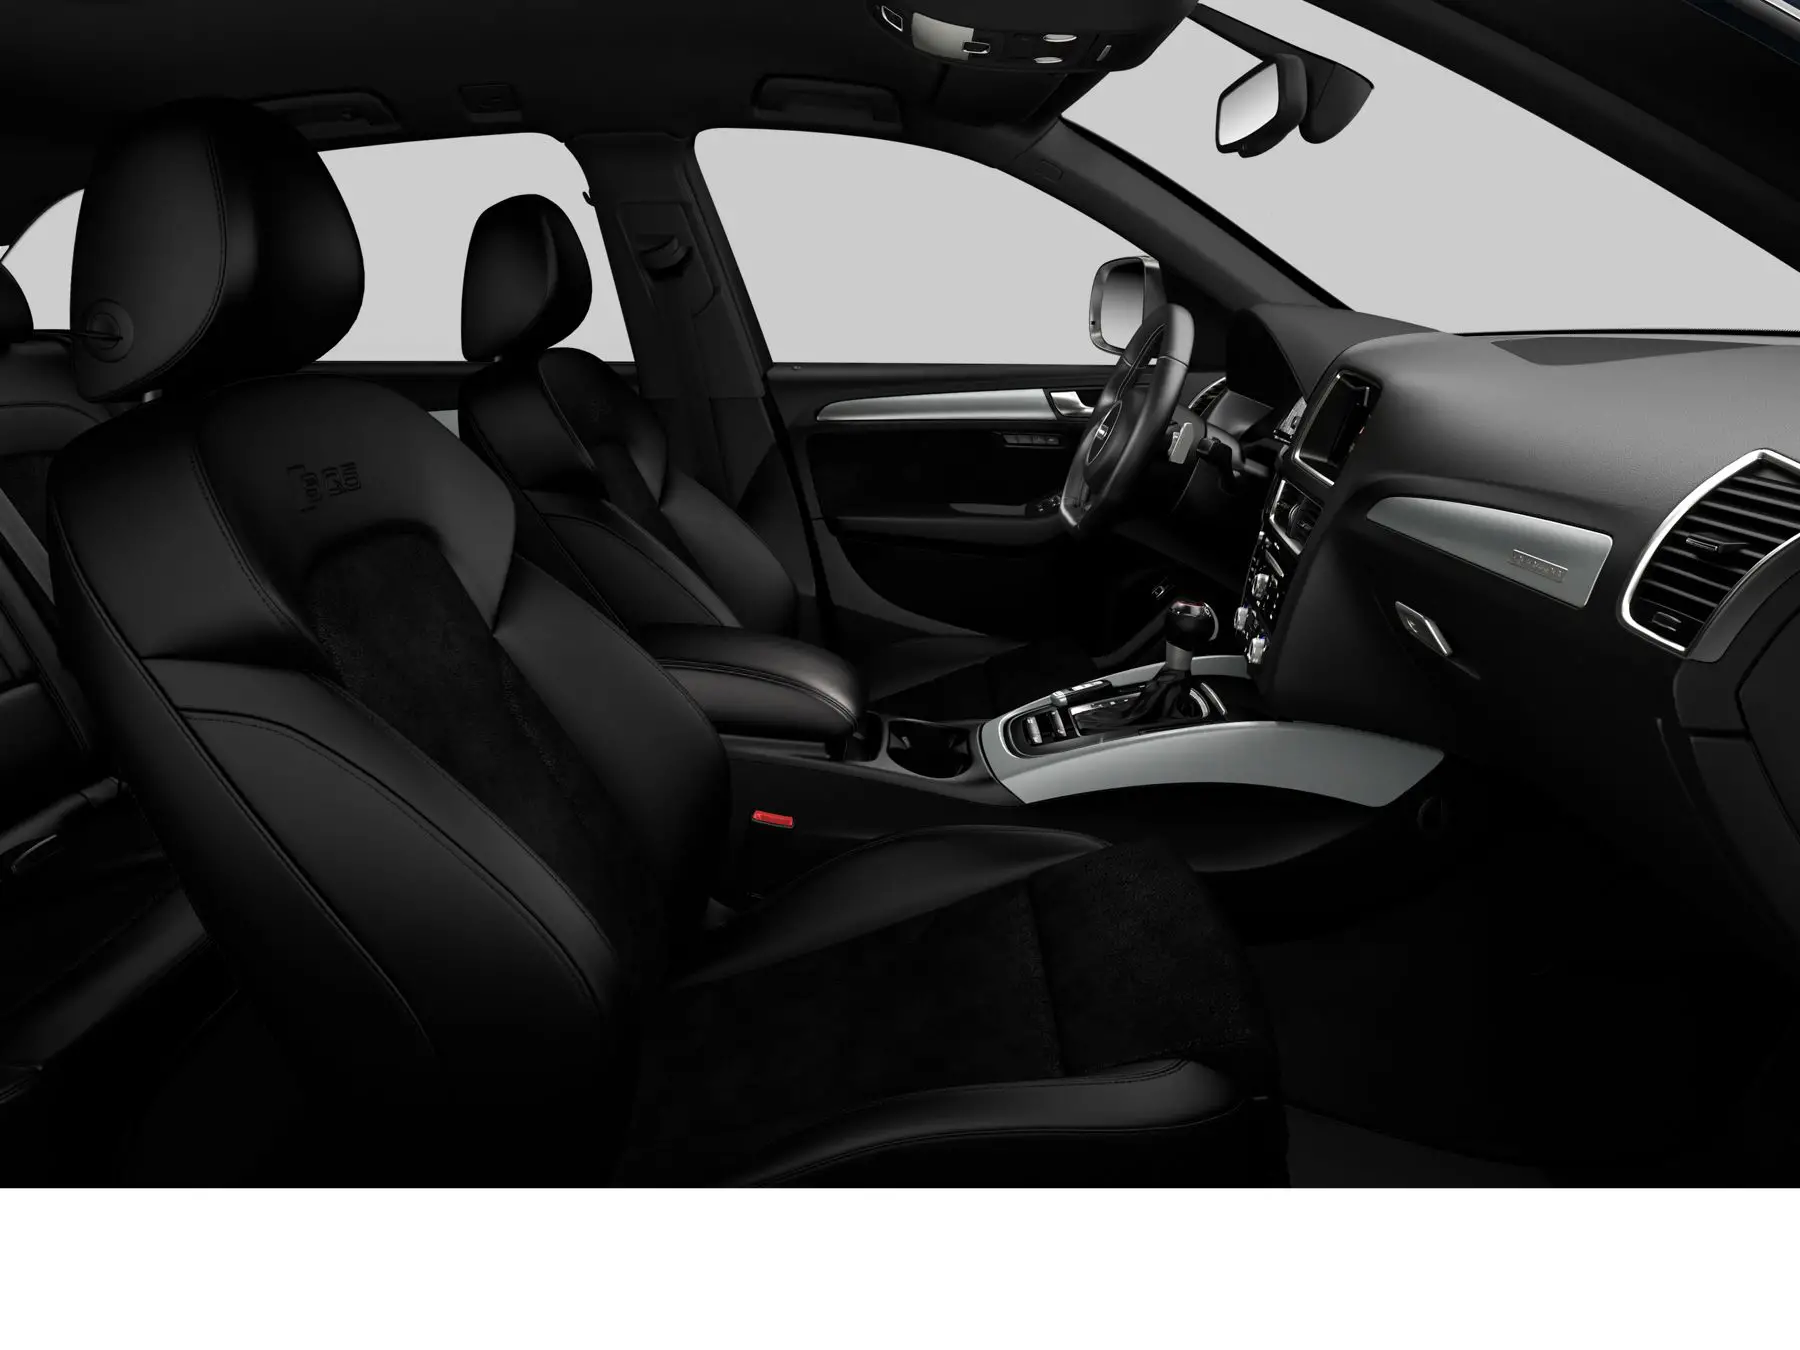 Audi SQ5 Premium Plus interior front seat side view